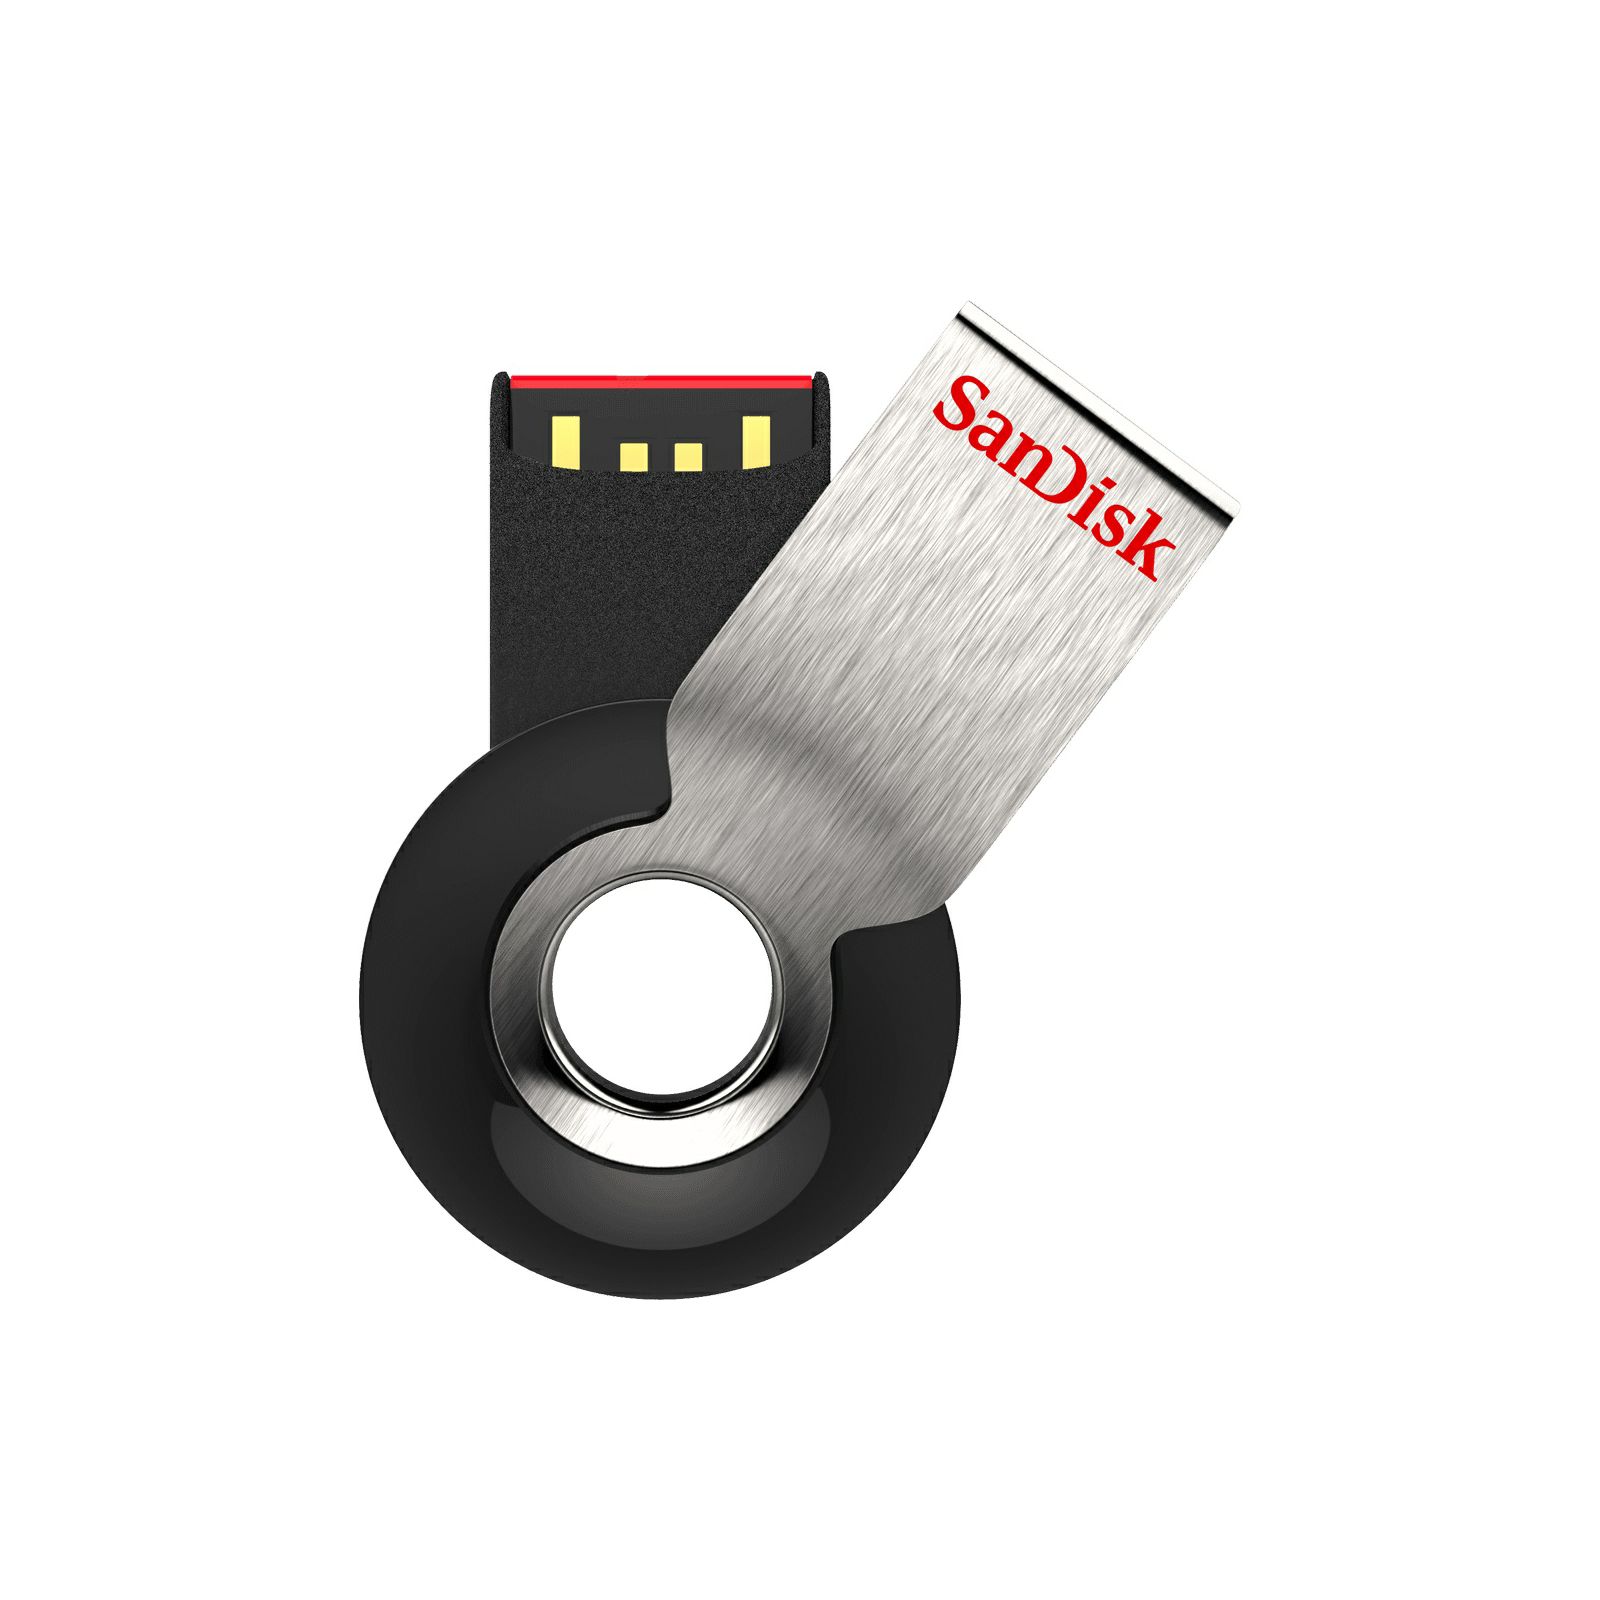 SanDisk Cruzer Orbit 16GB SDCZ58-016G-B35 USB Memory Stick